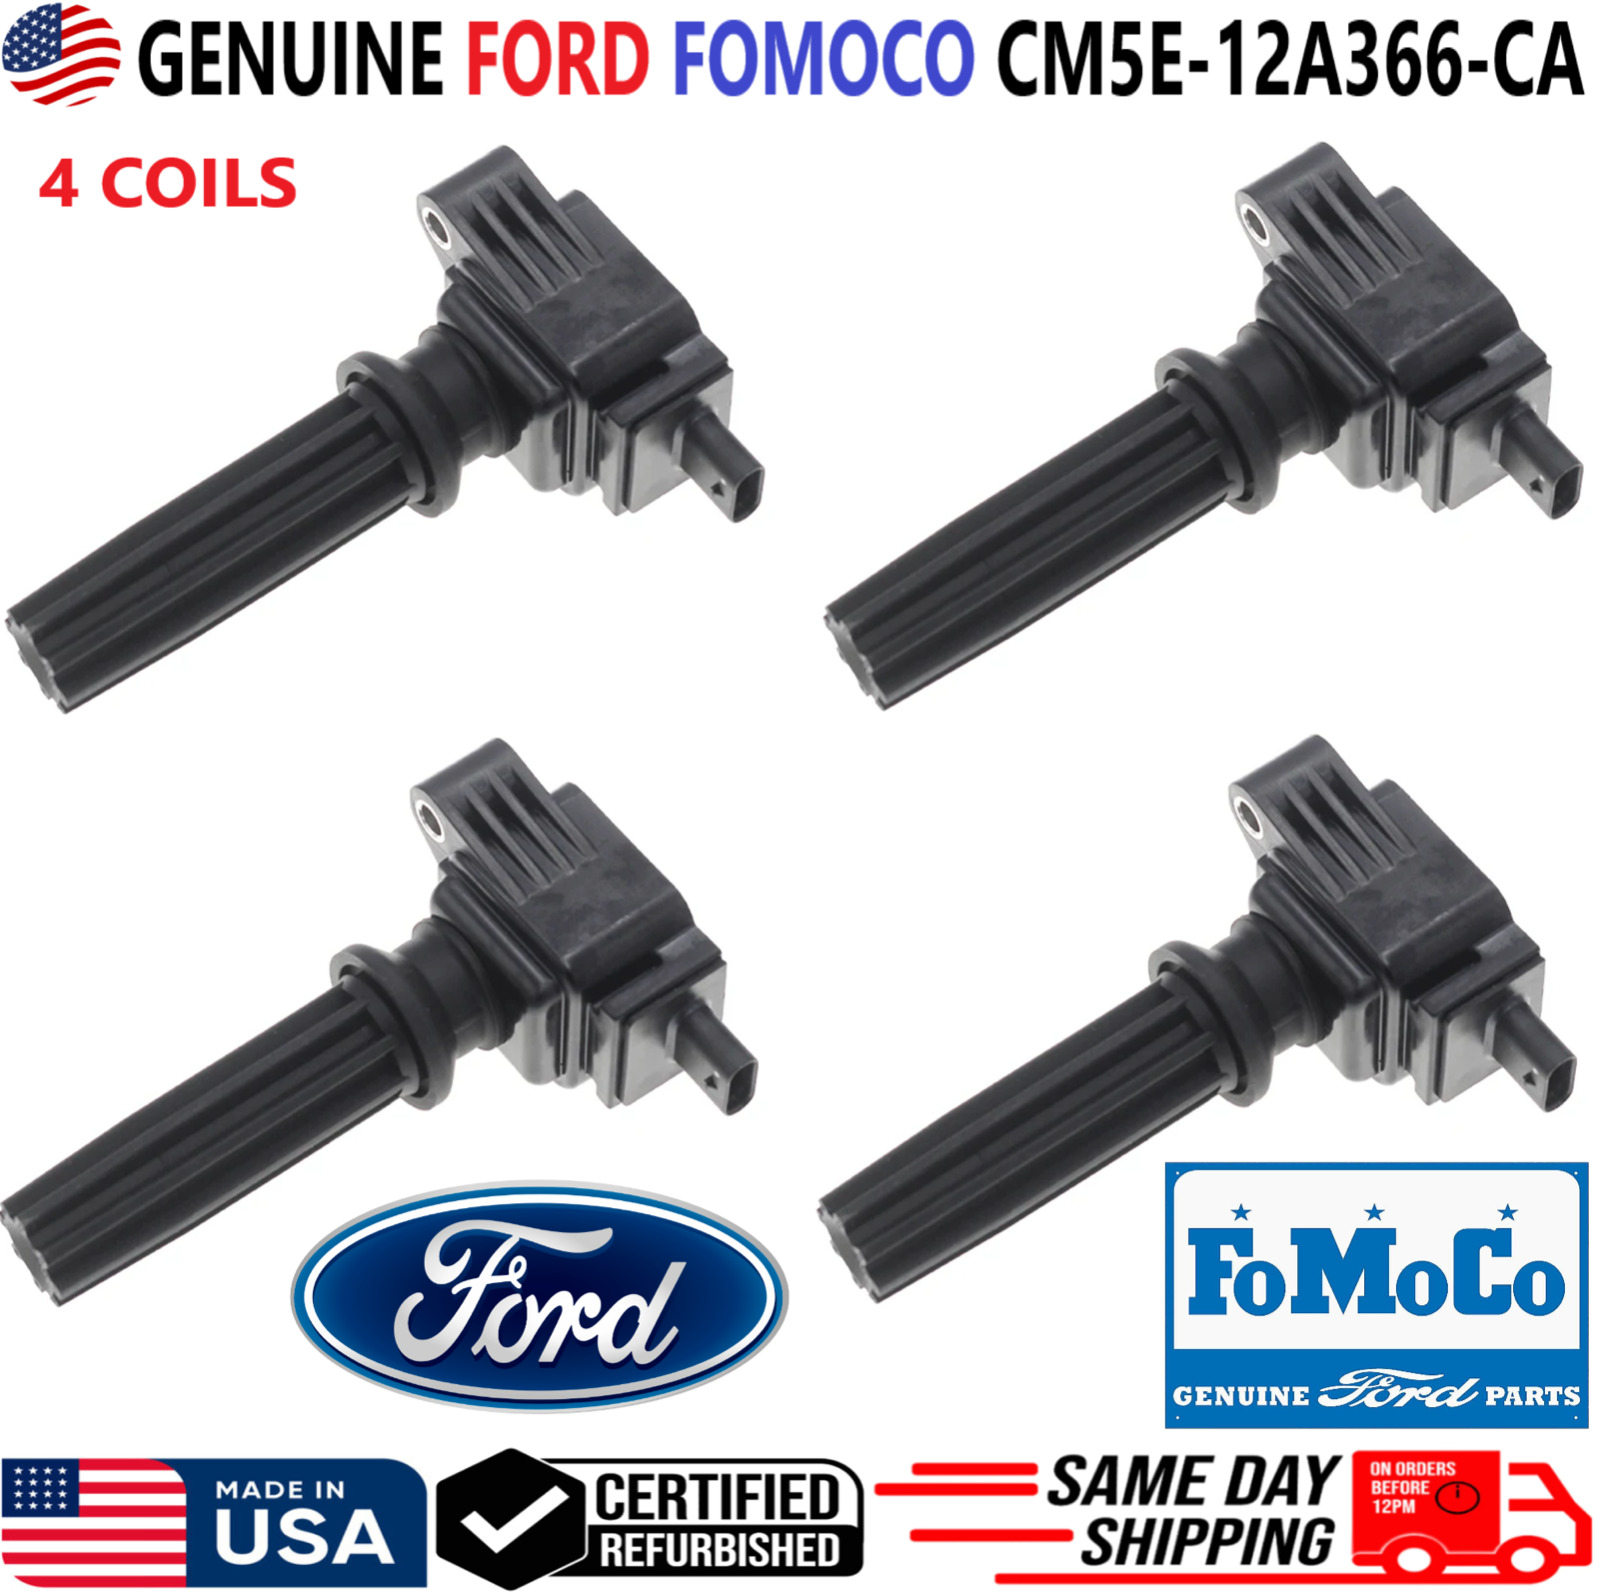 GENUINE FORD FOMOCO Set of 4 Ignition Coils For 2012-2017 Ford, CM5E-12A366-CA